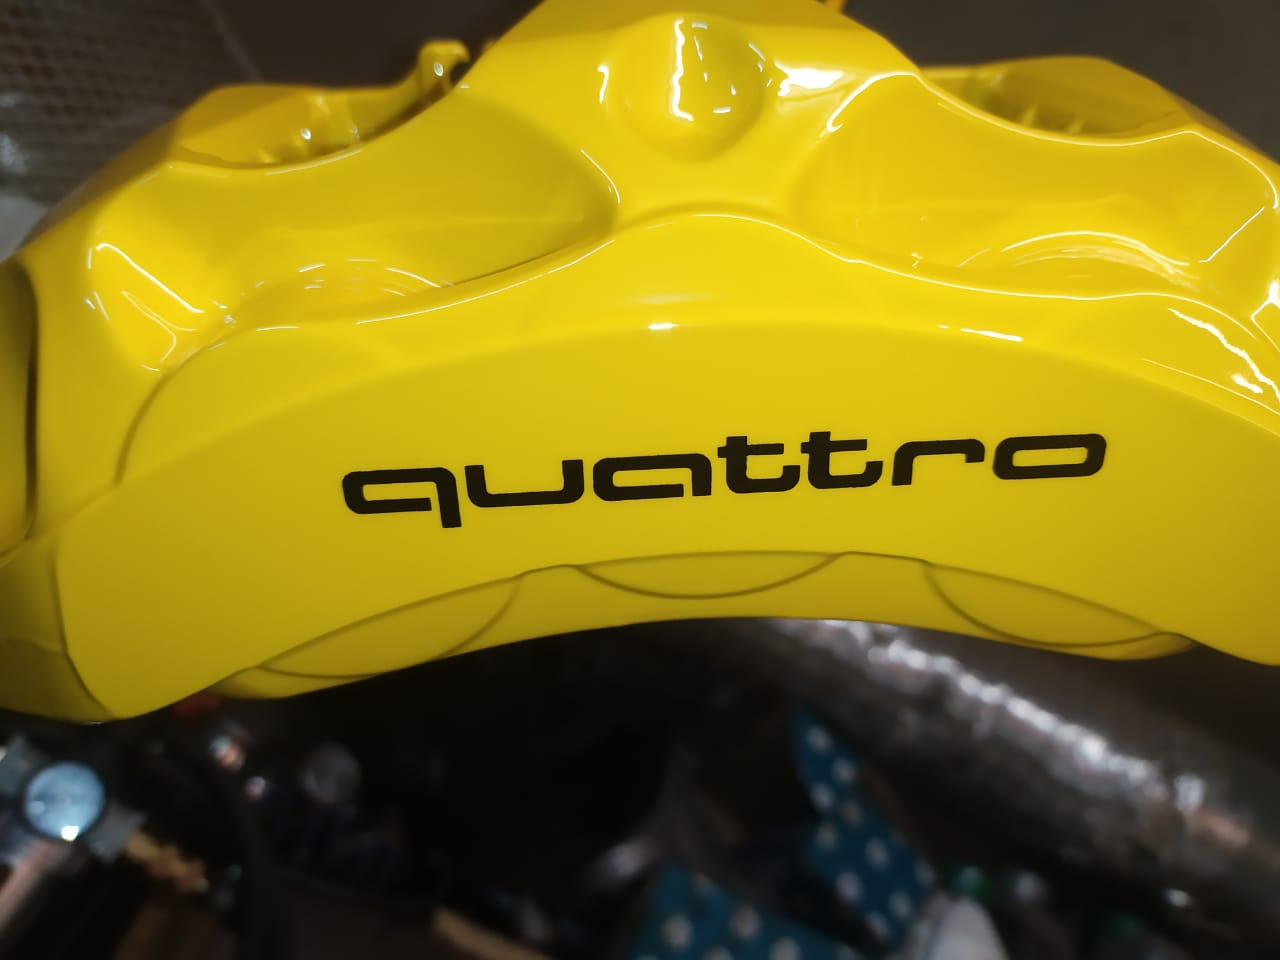 суппорт quattro покраска в желтый цвет